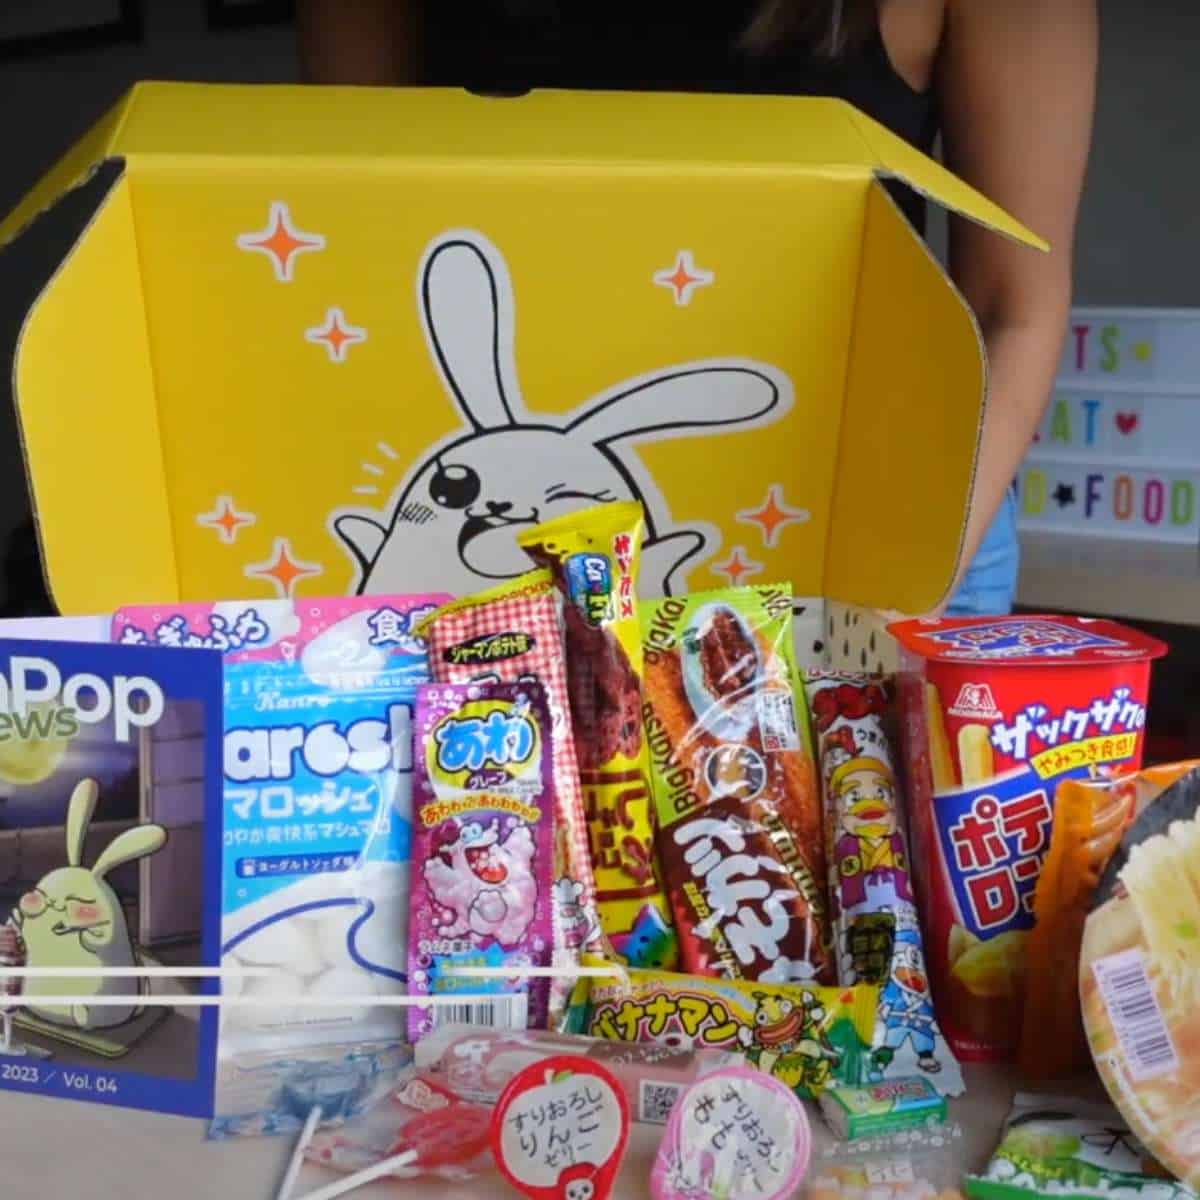 zenpop review snack box